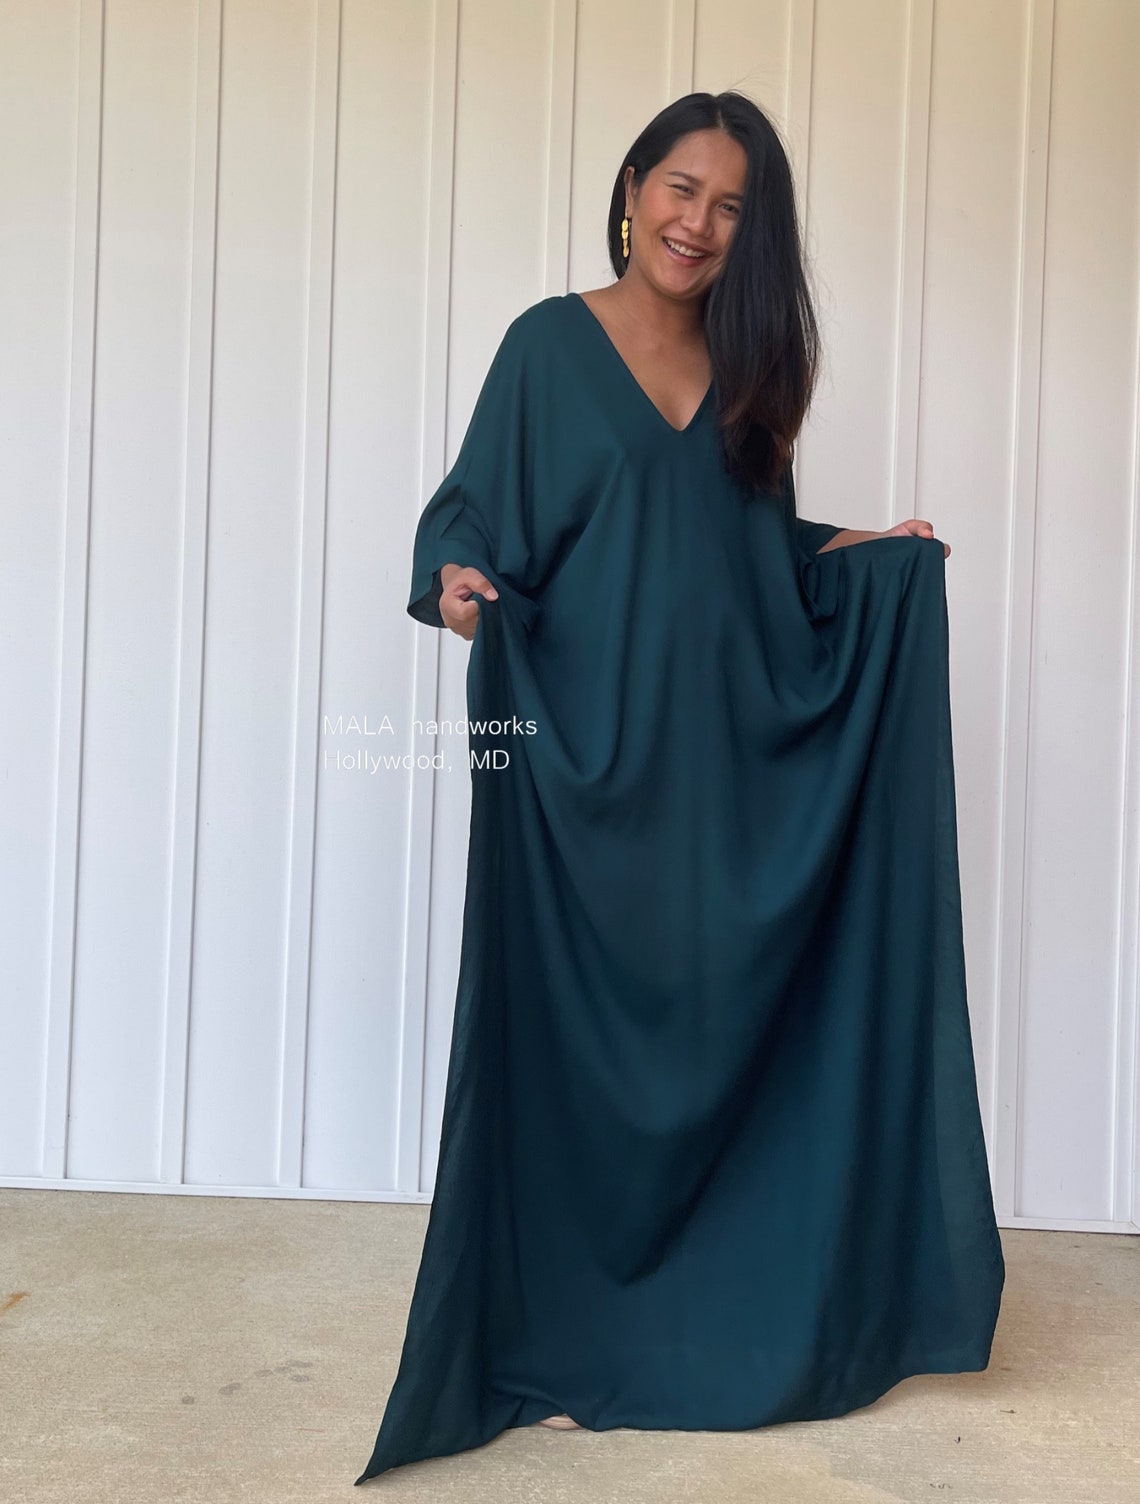 A-79 Green Kaftan Home Dress Versatile Dress Beach Wear - Etsy